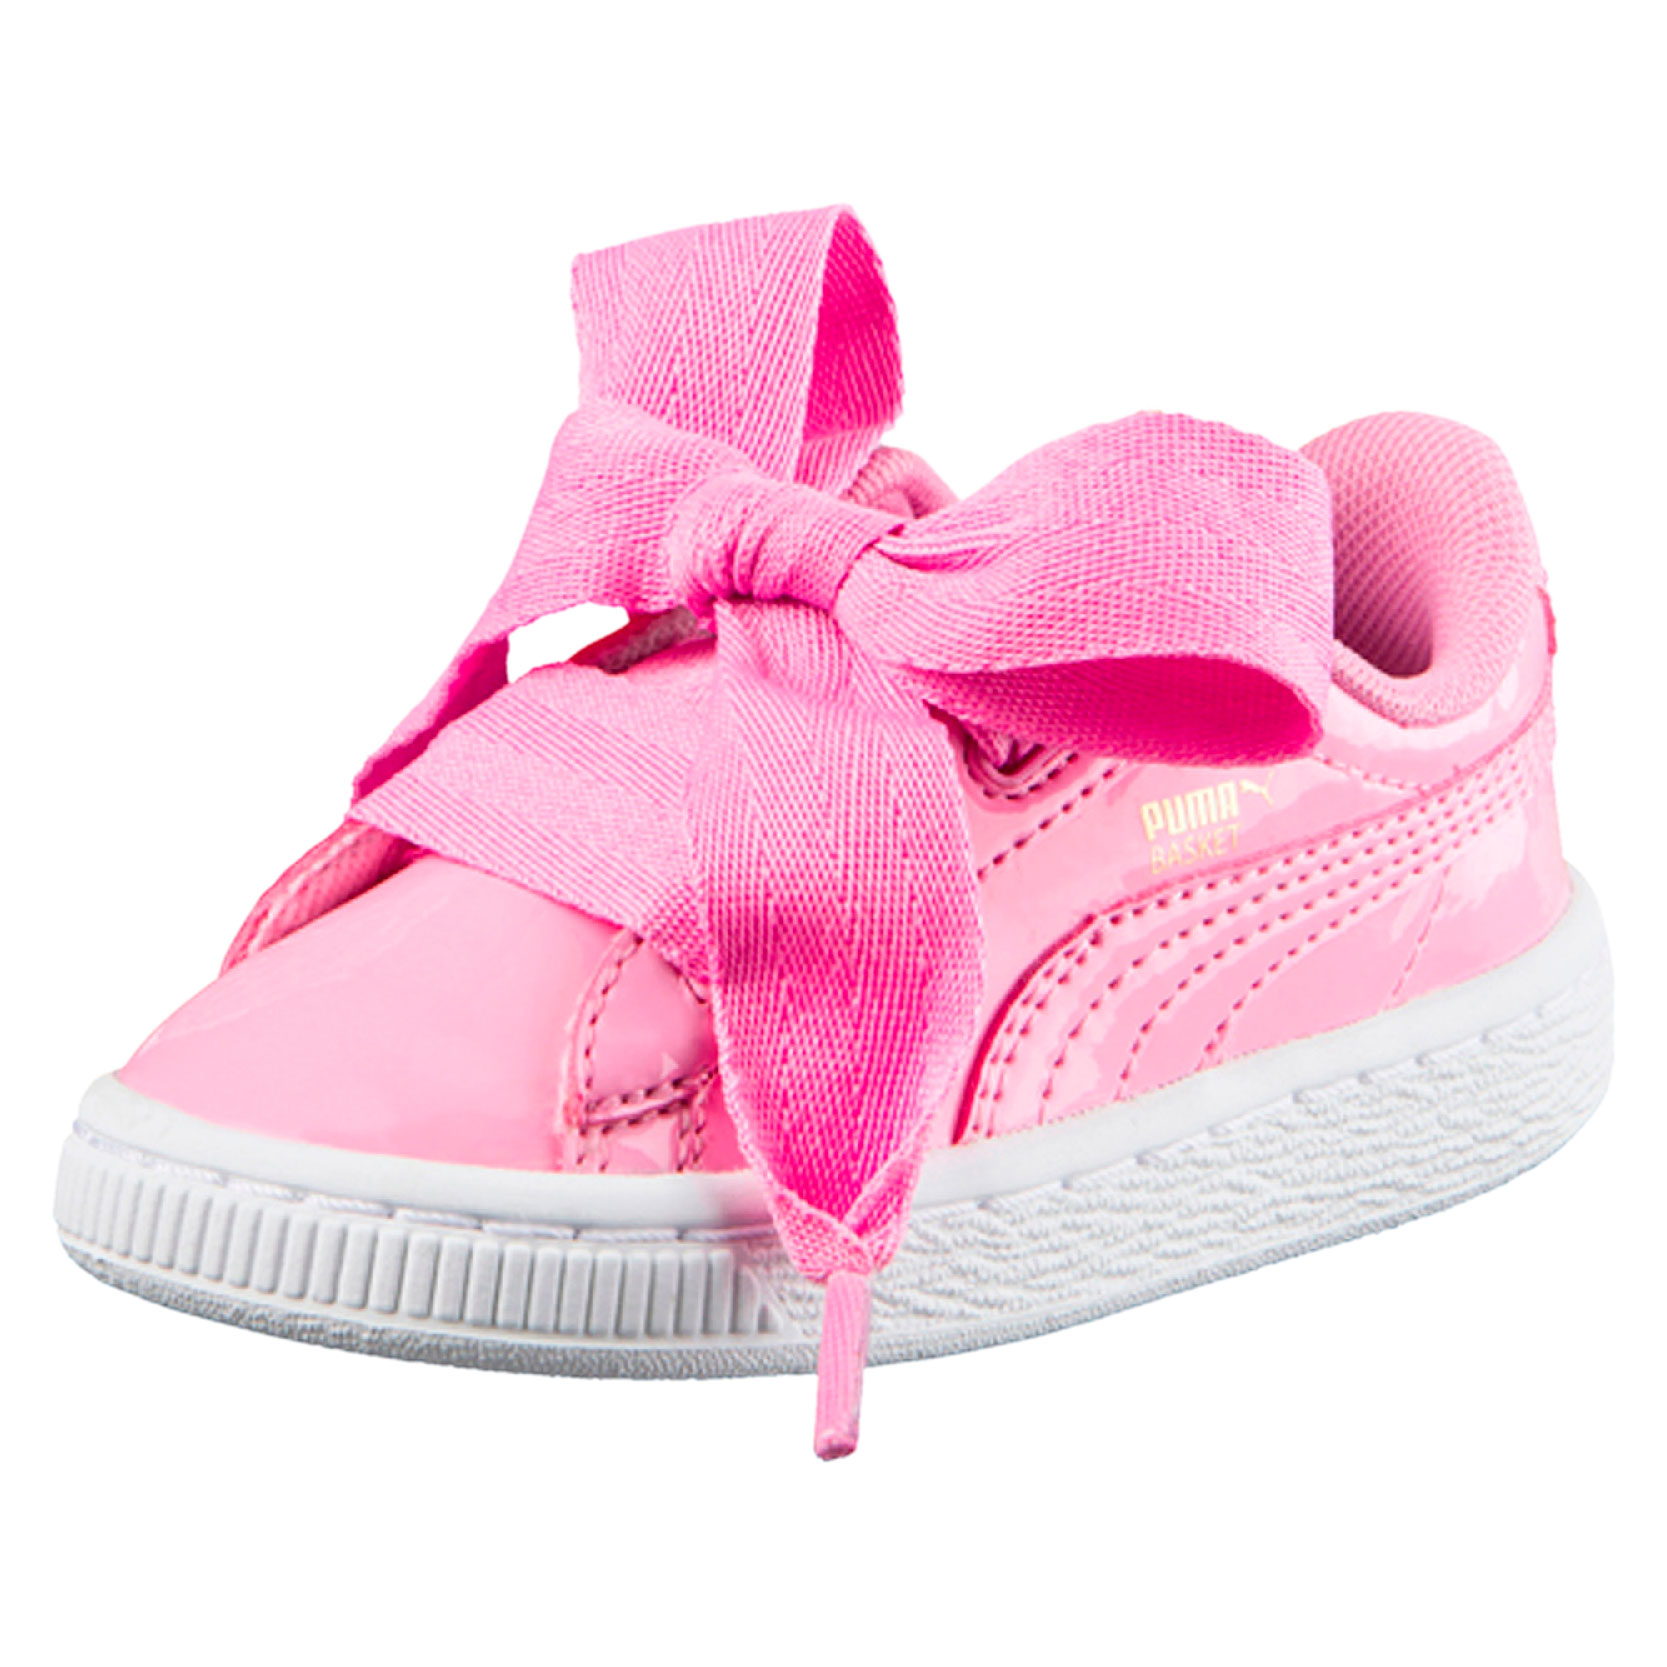 puma infant girl shoes